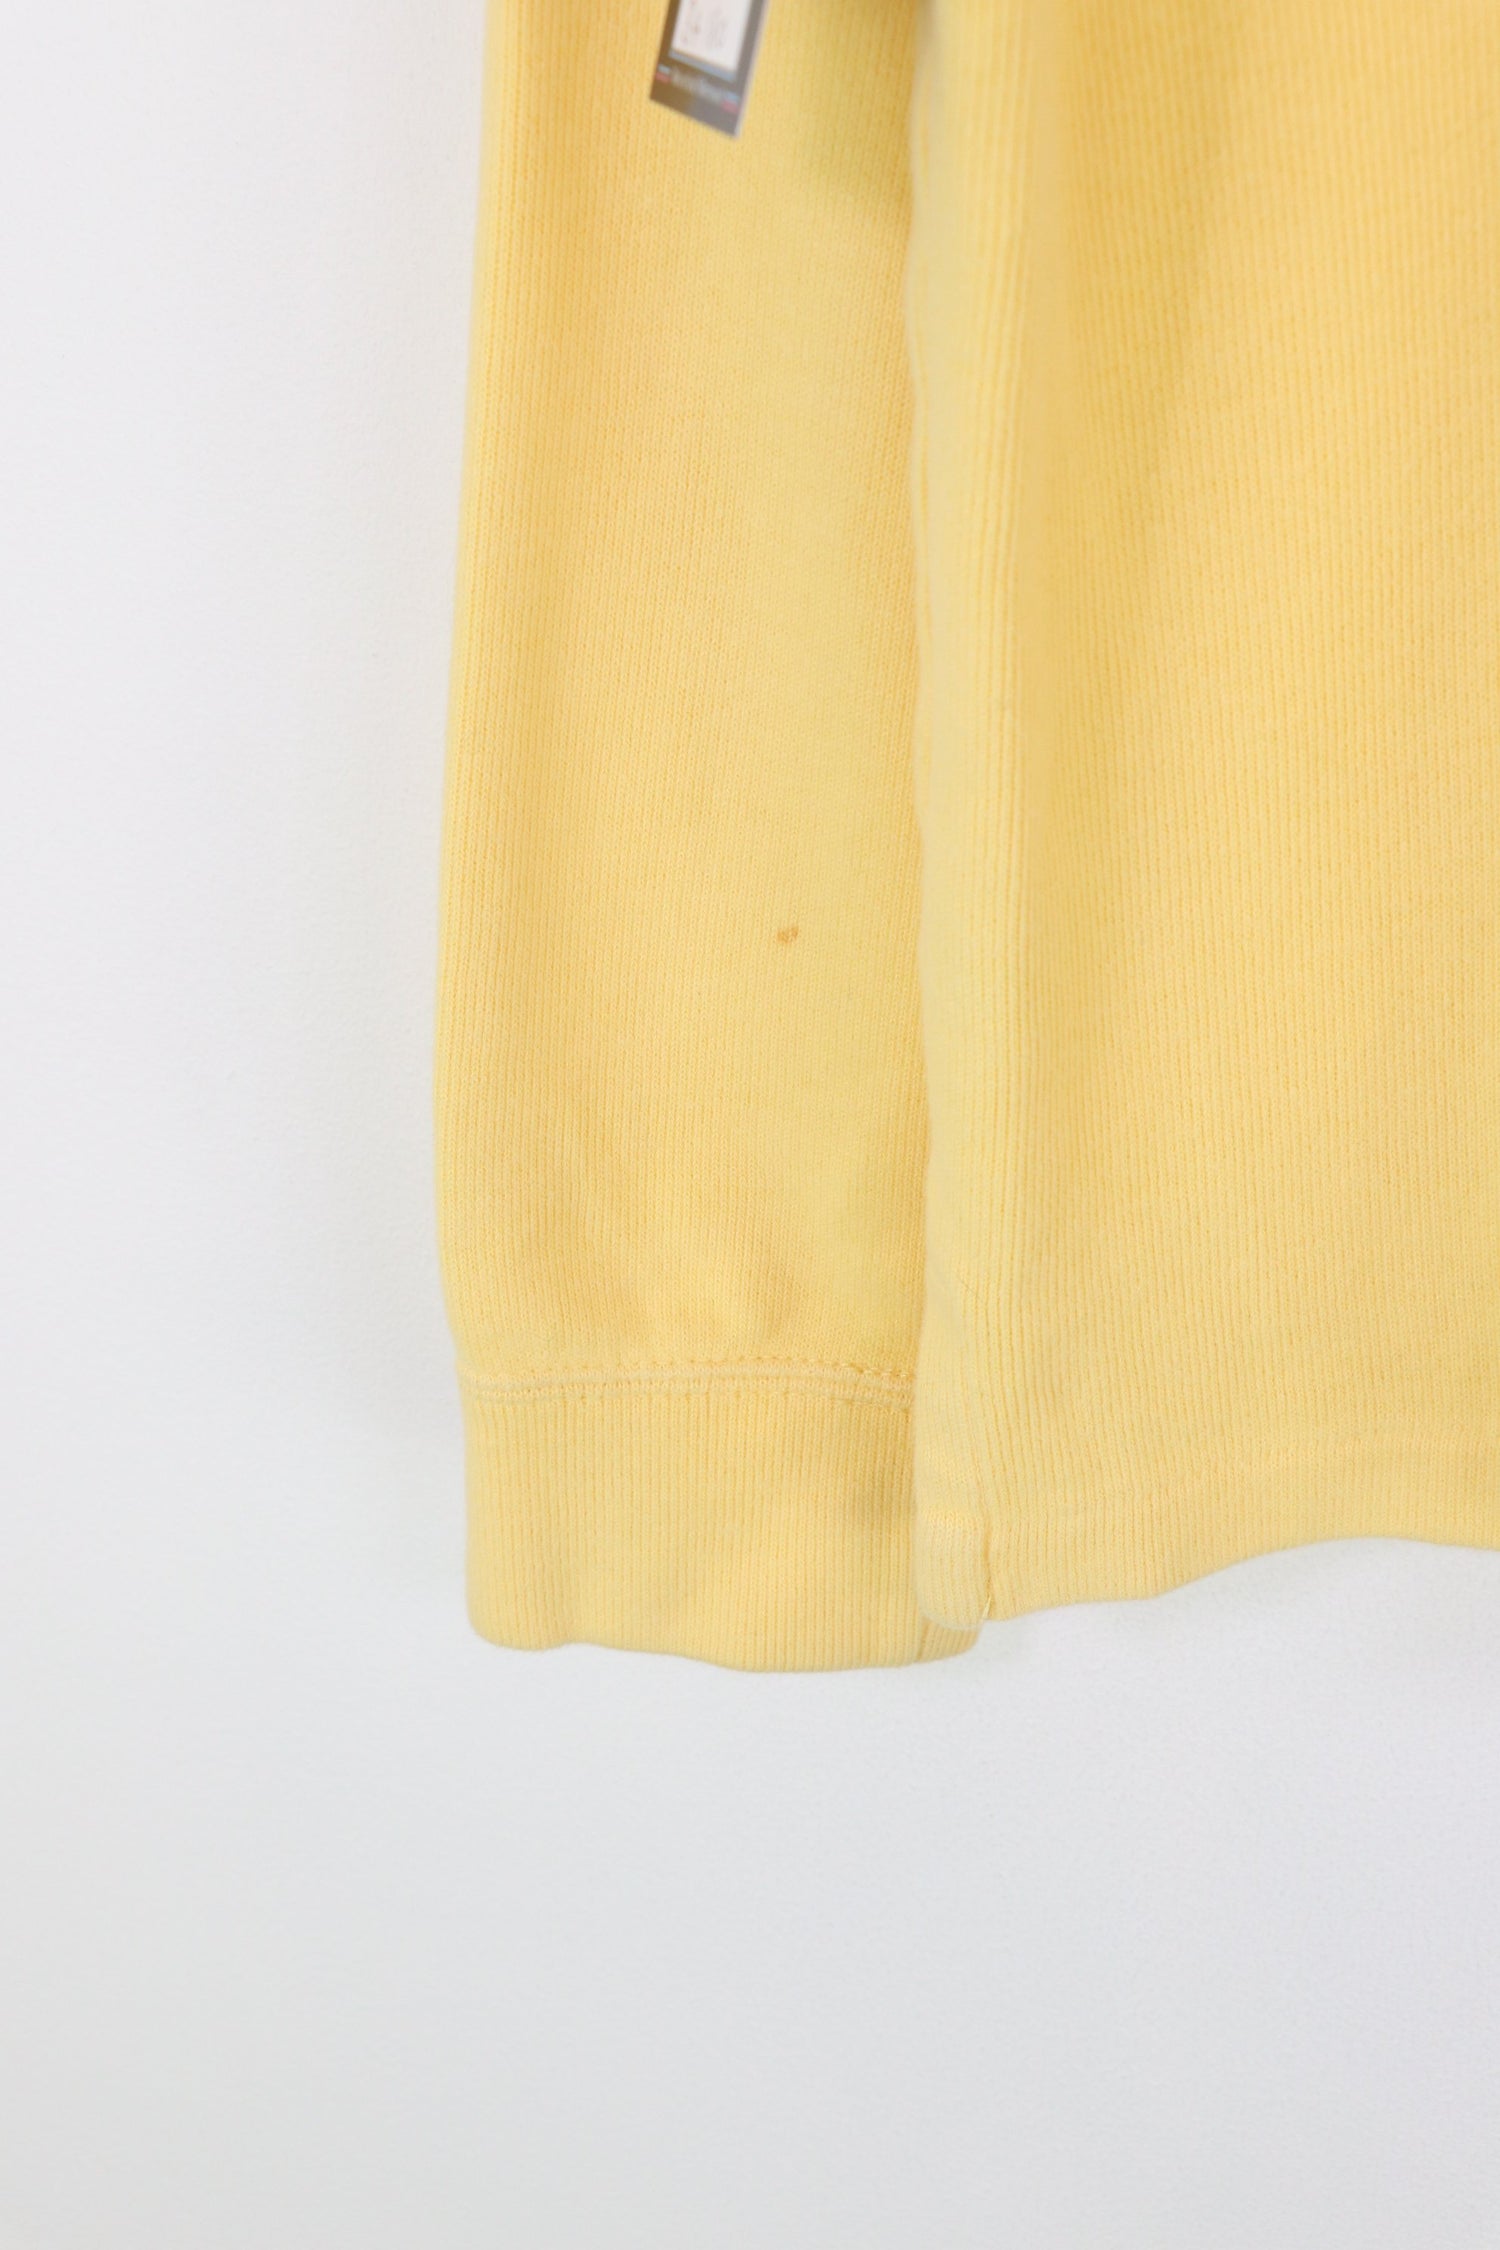 Ralph Lauren 1/4 Zip Sweatshirt Yellow Small